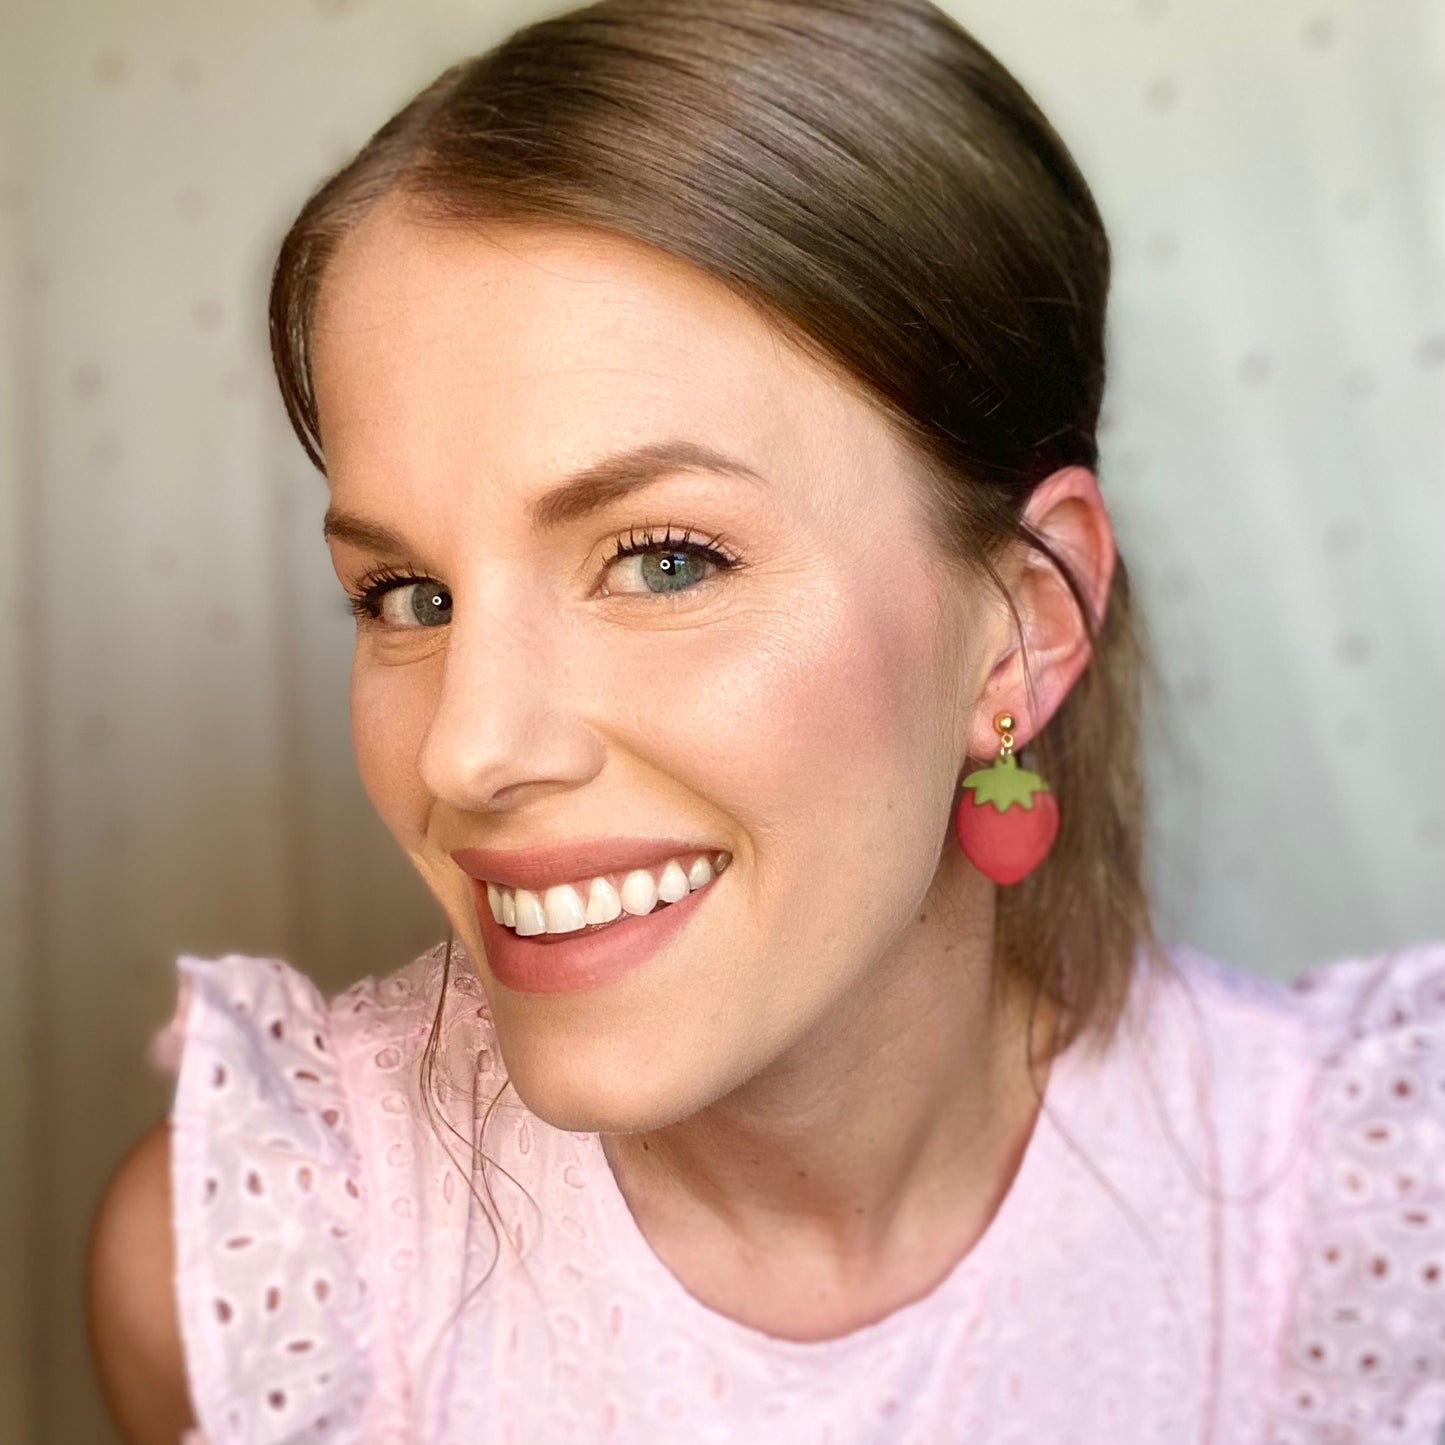 The Berri | Strawberry Clay Earrings